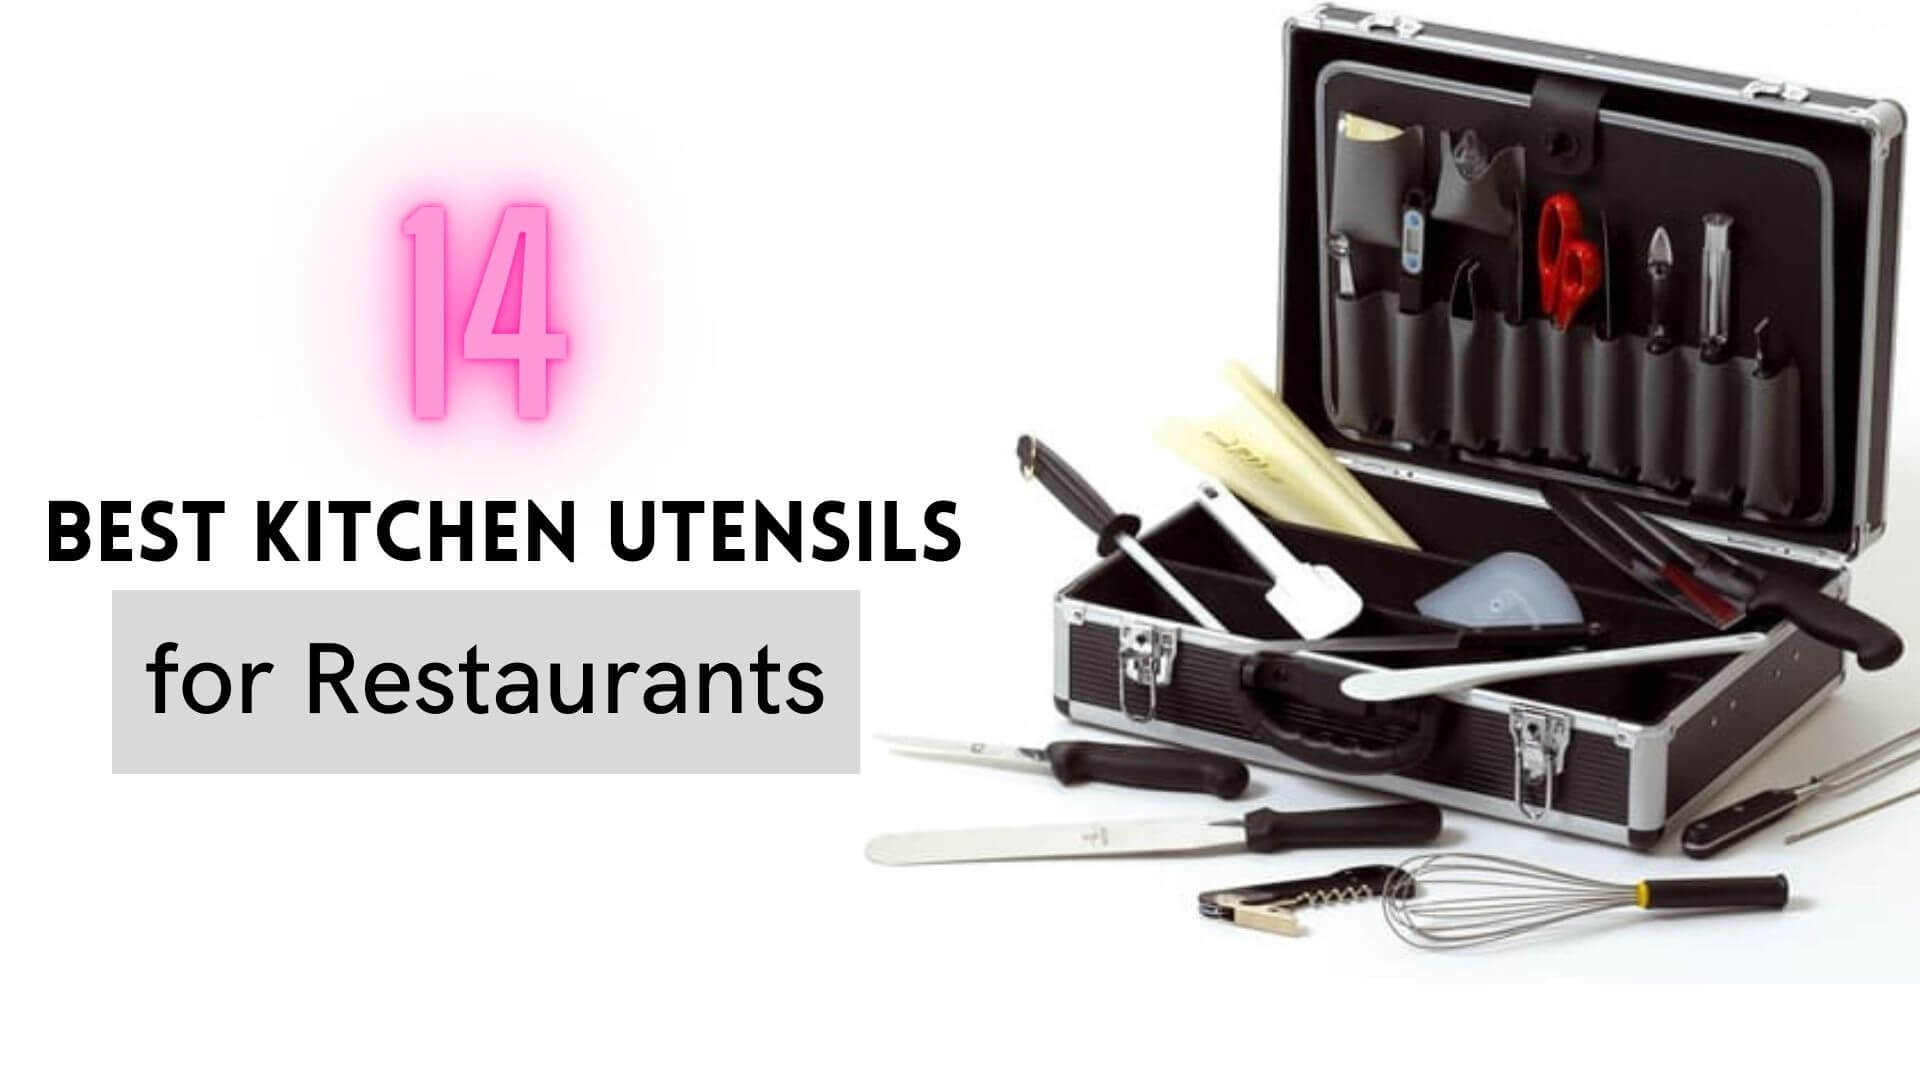 Top 14 Kitchen Utensils for Restaurants in Qatar